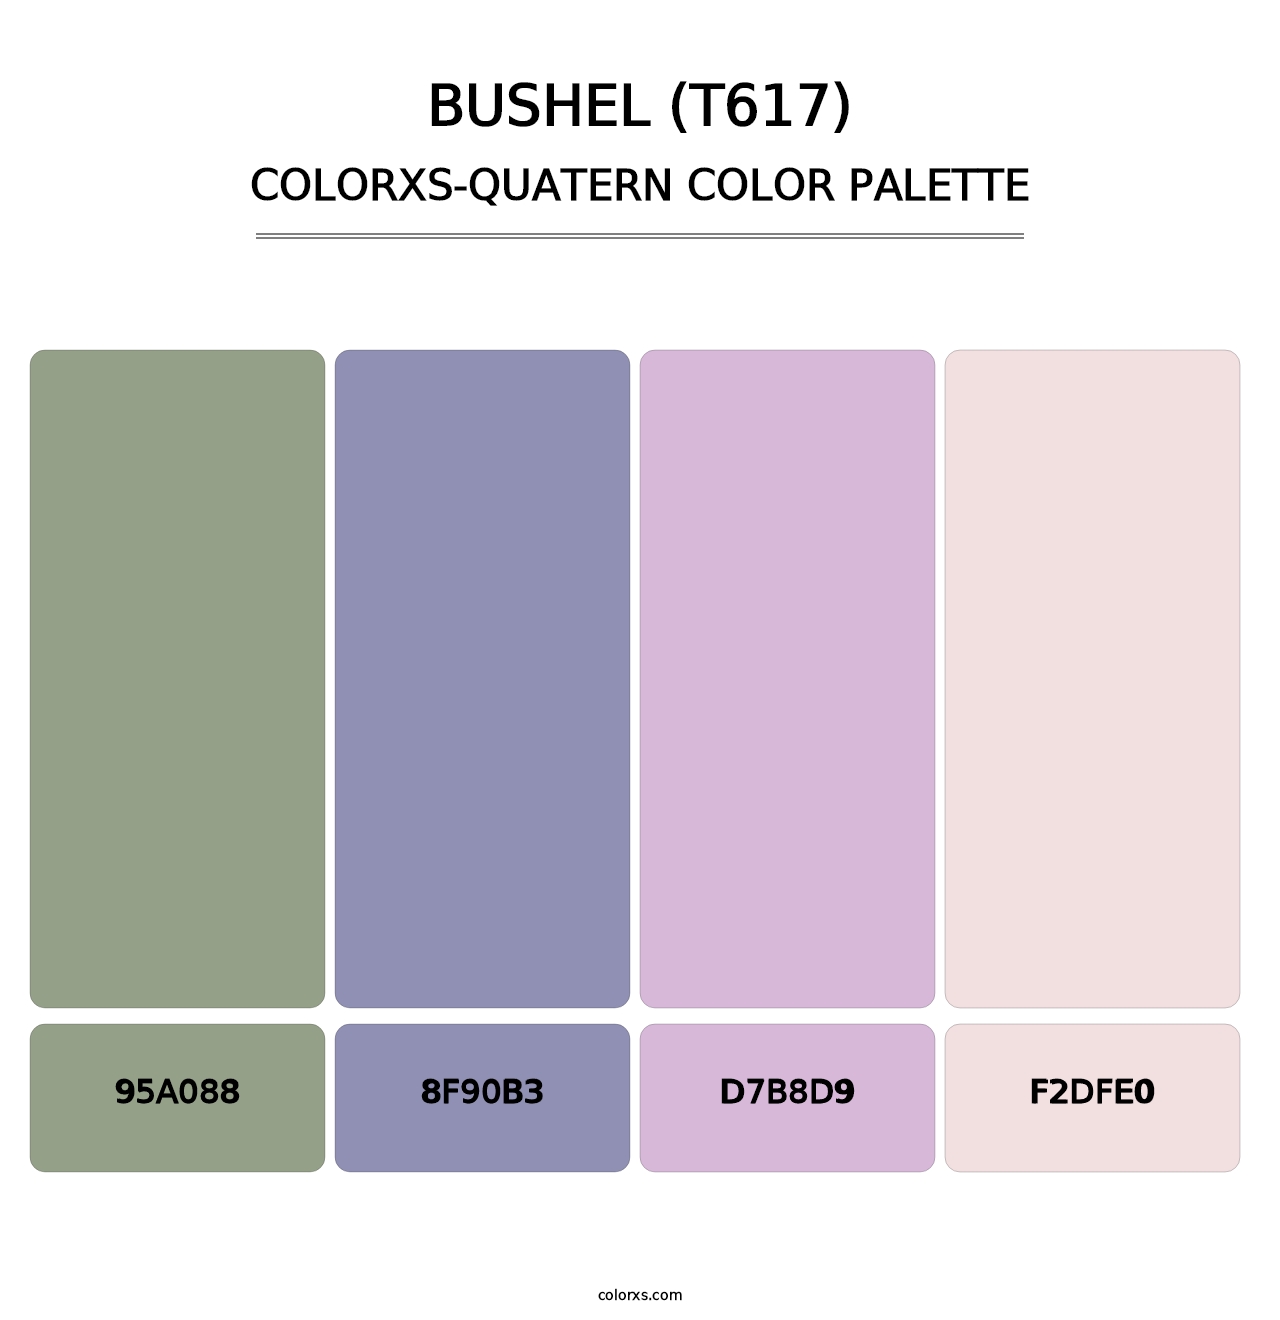 Bushel (T617) - Colorxs Quatern Palette